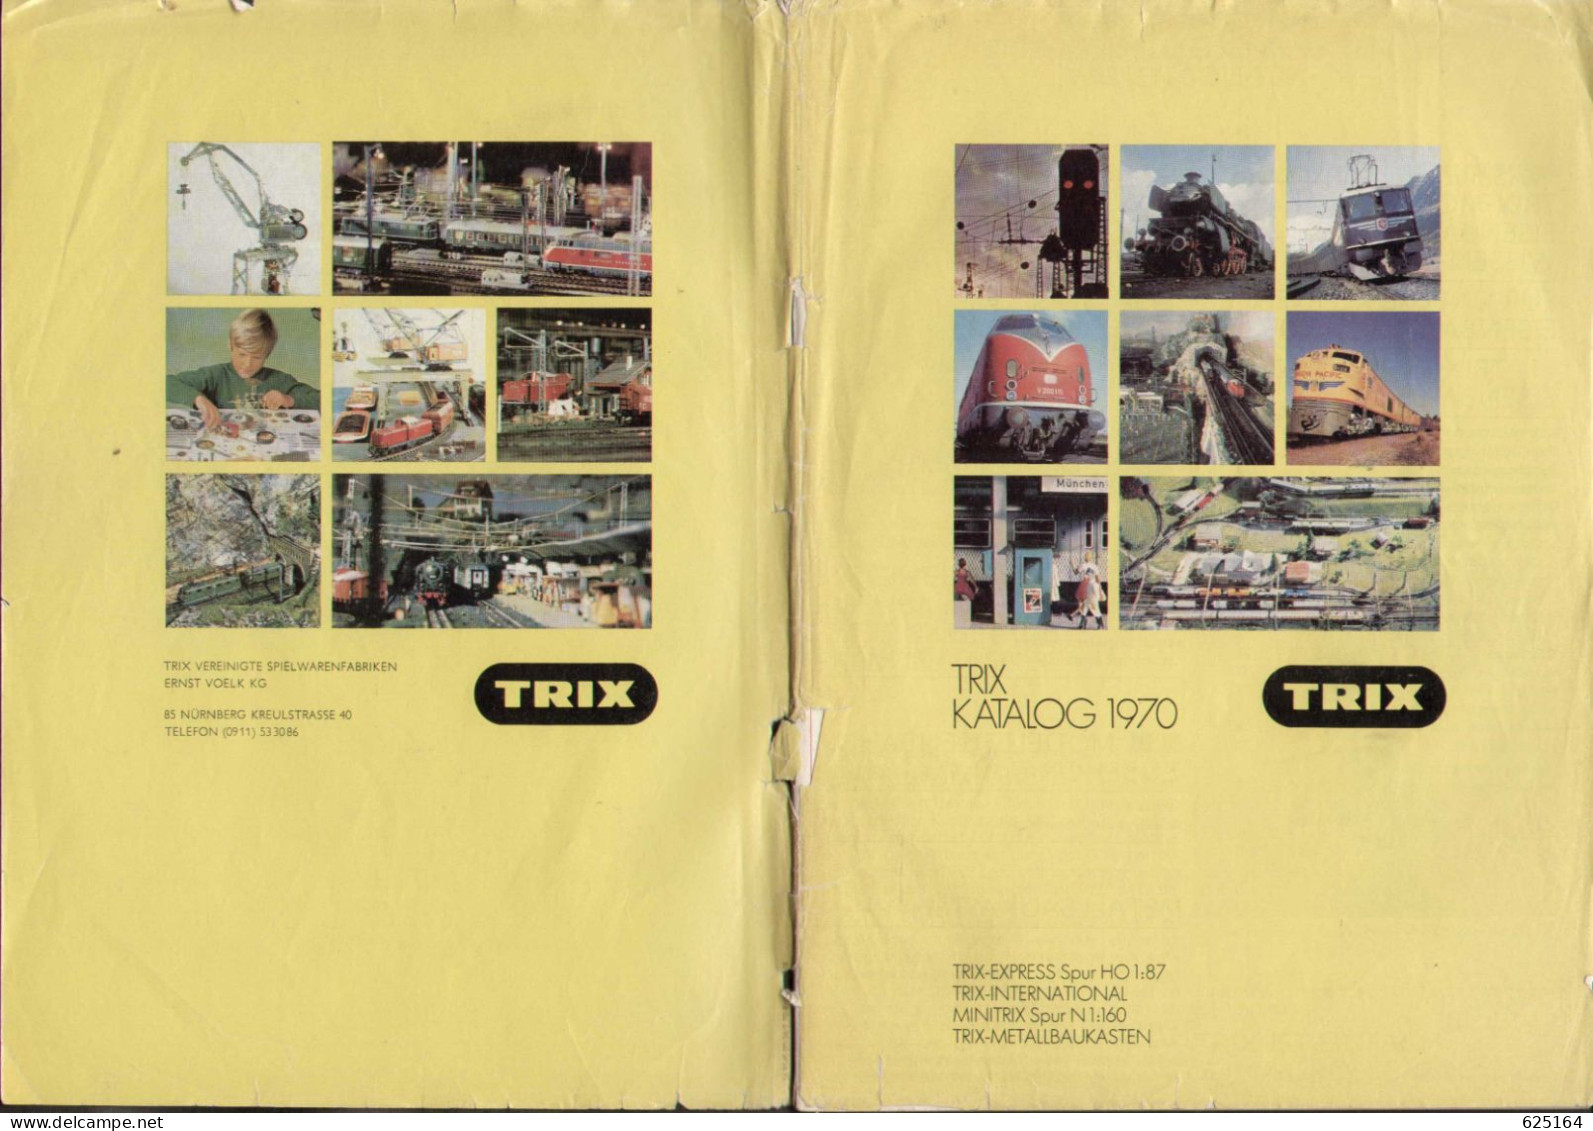 Catalogue TRIX MINITRIX 1970 Gesamtkatalog  HO 1/87 - N 1/160 - German